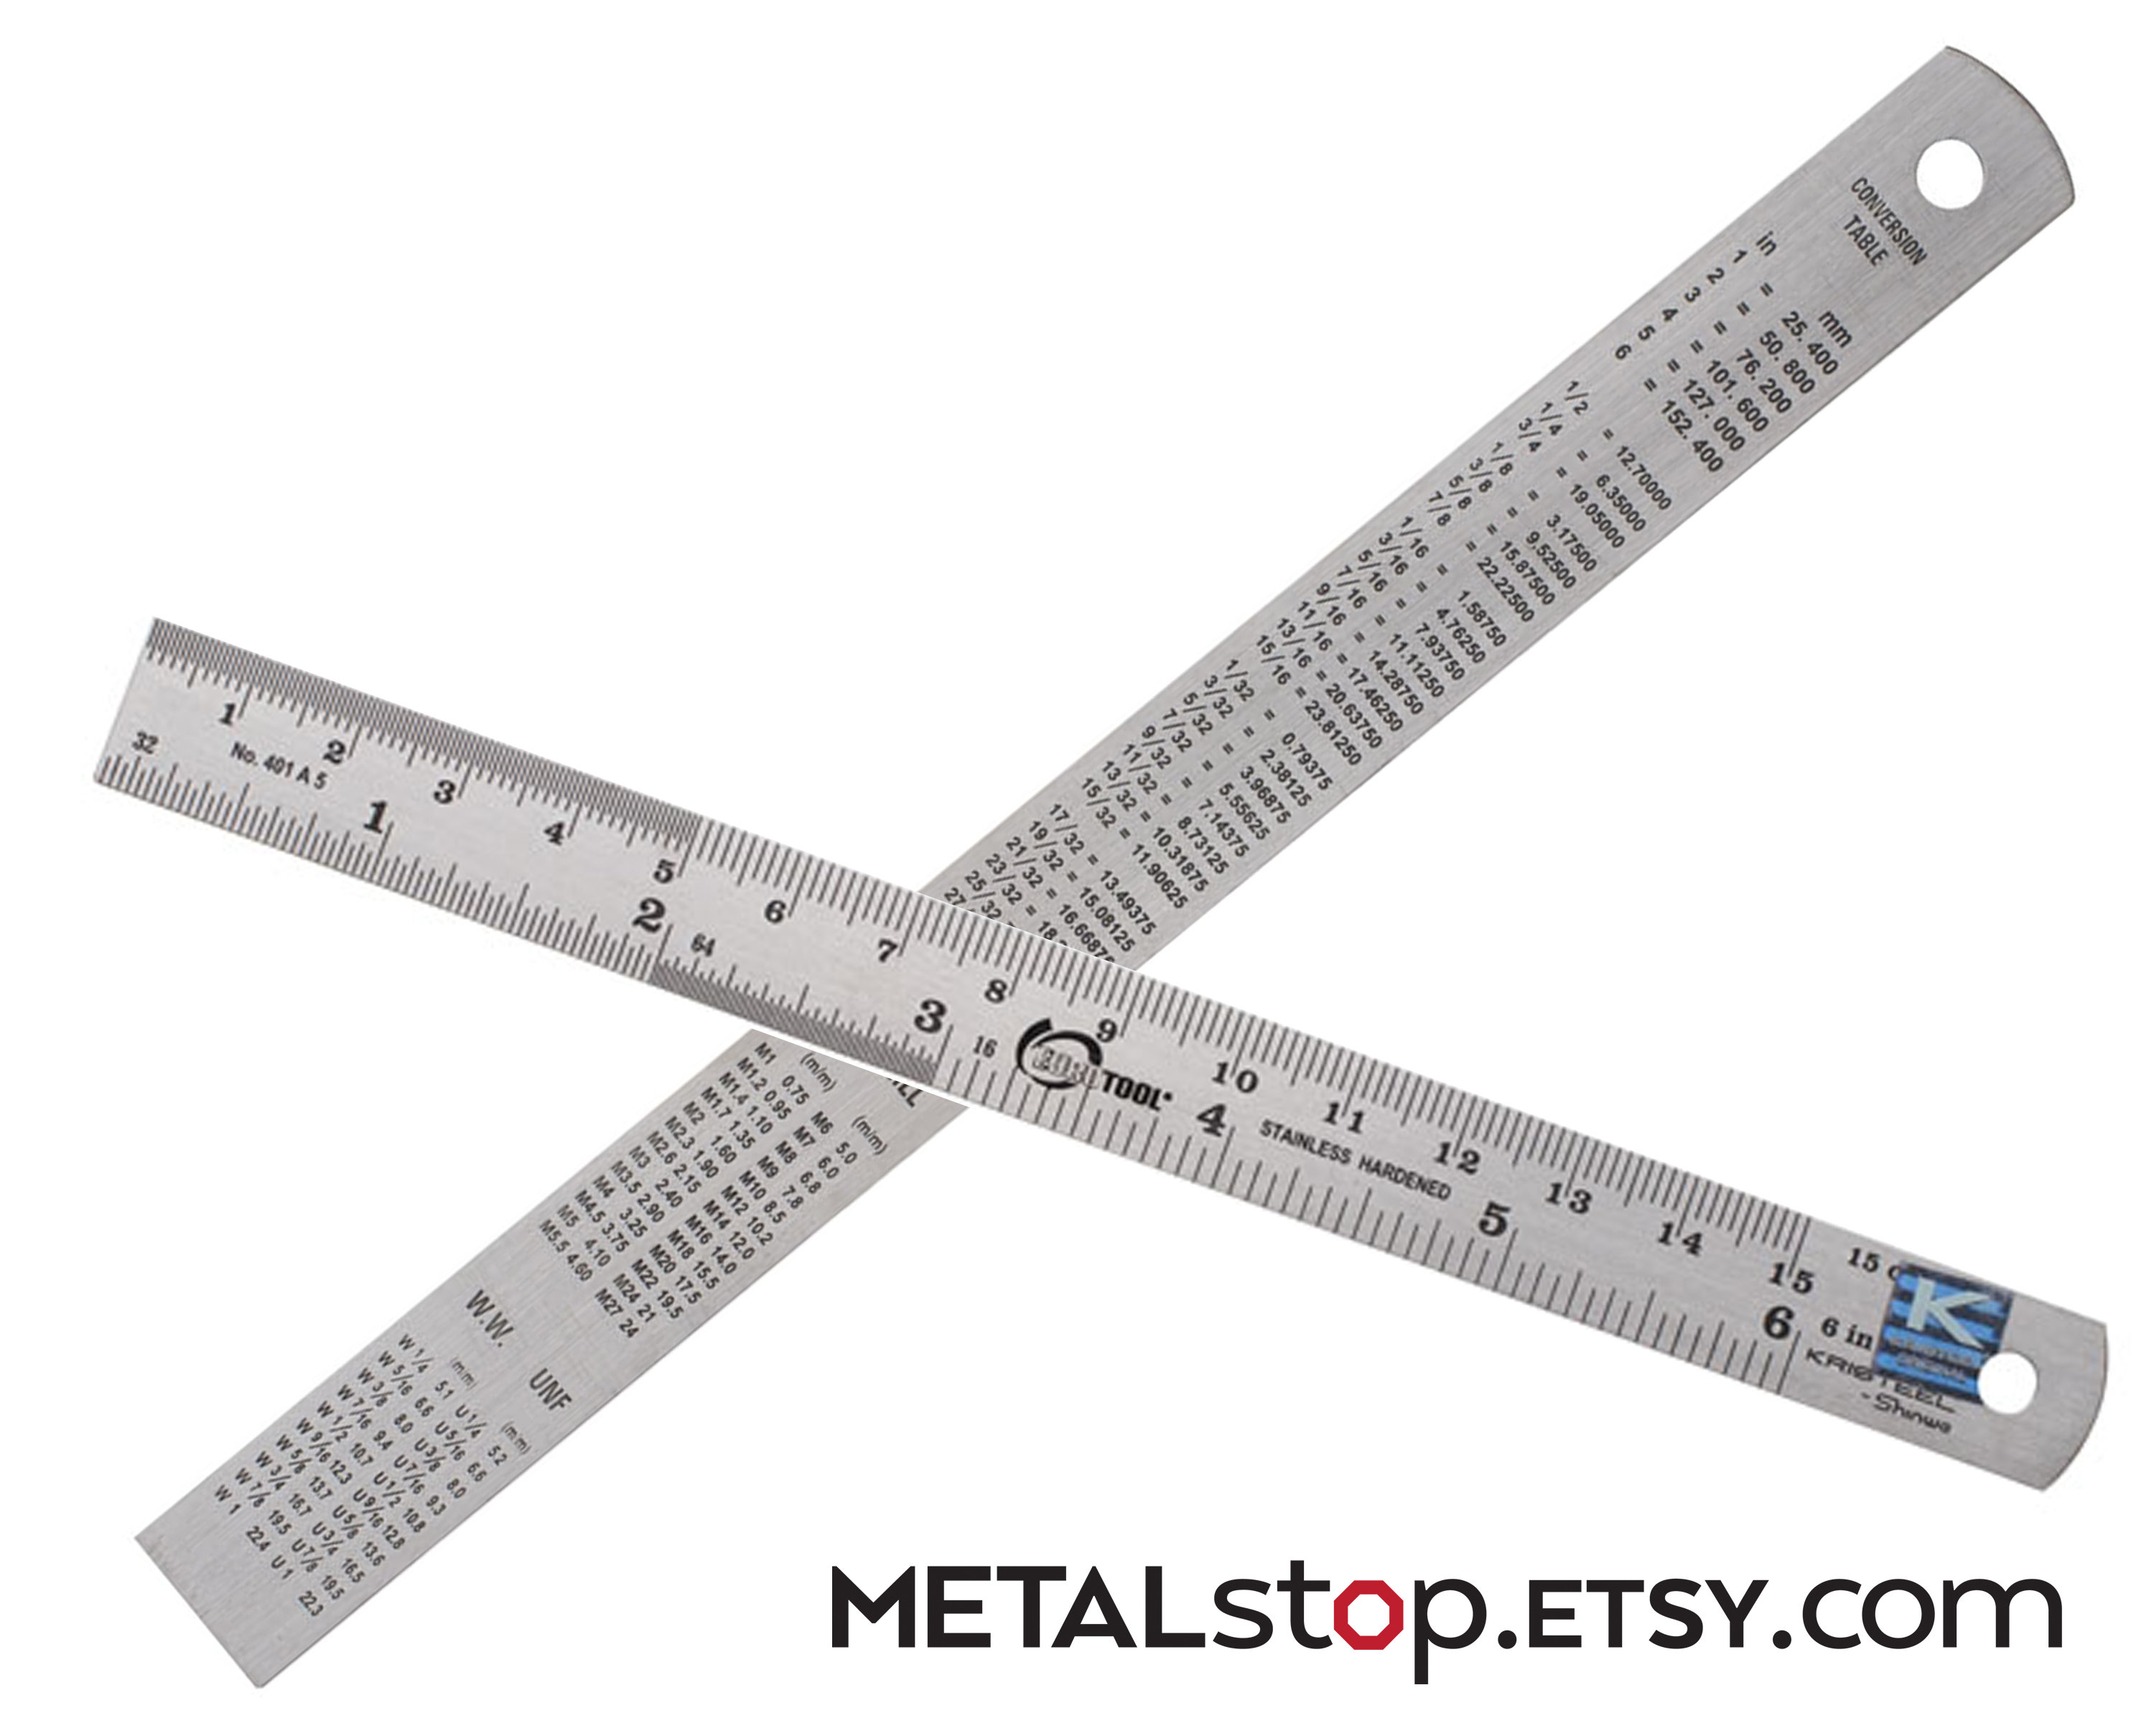 RUNROTOO 1pc Scale Metal Precision Ruler Millimeter Ruler